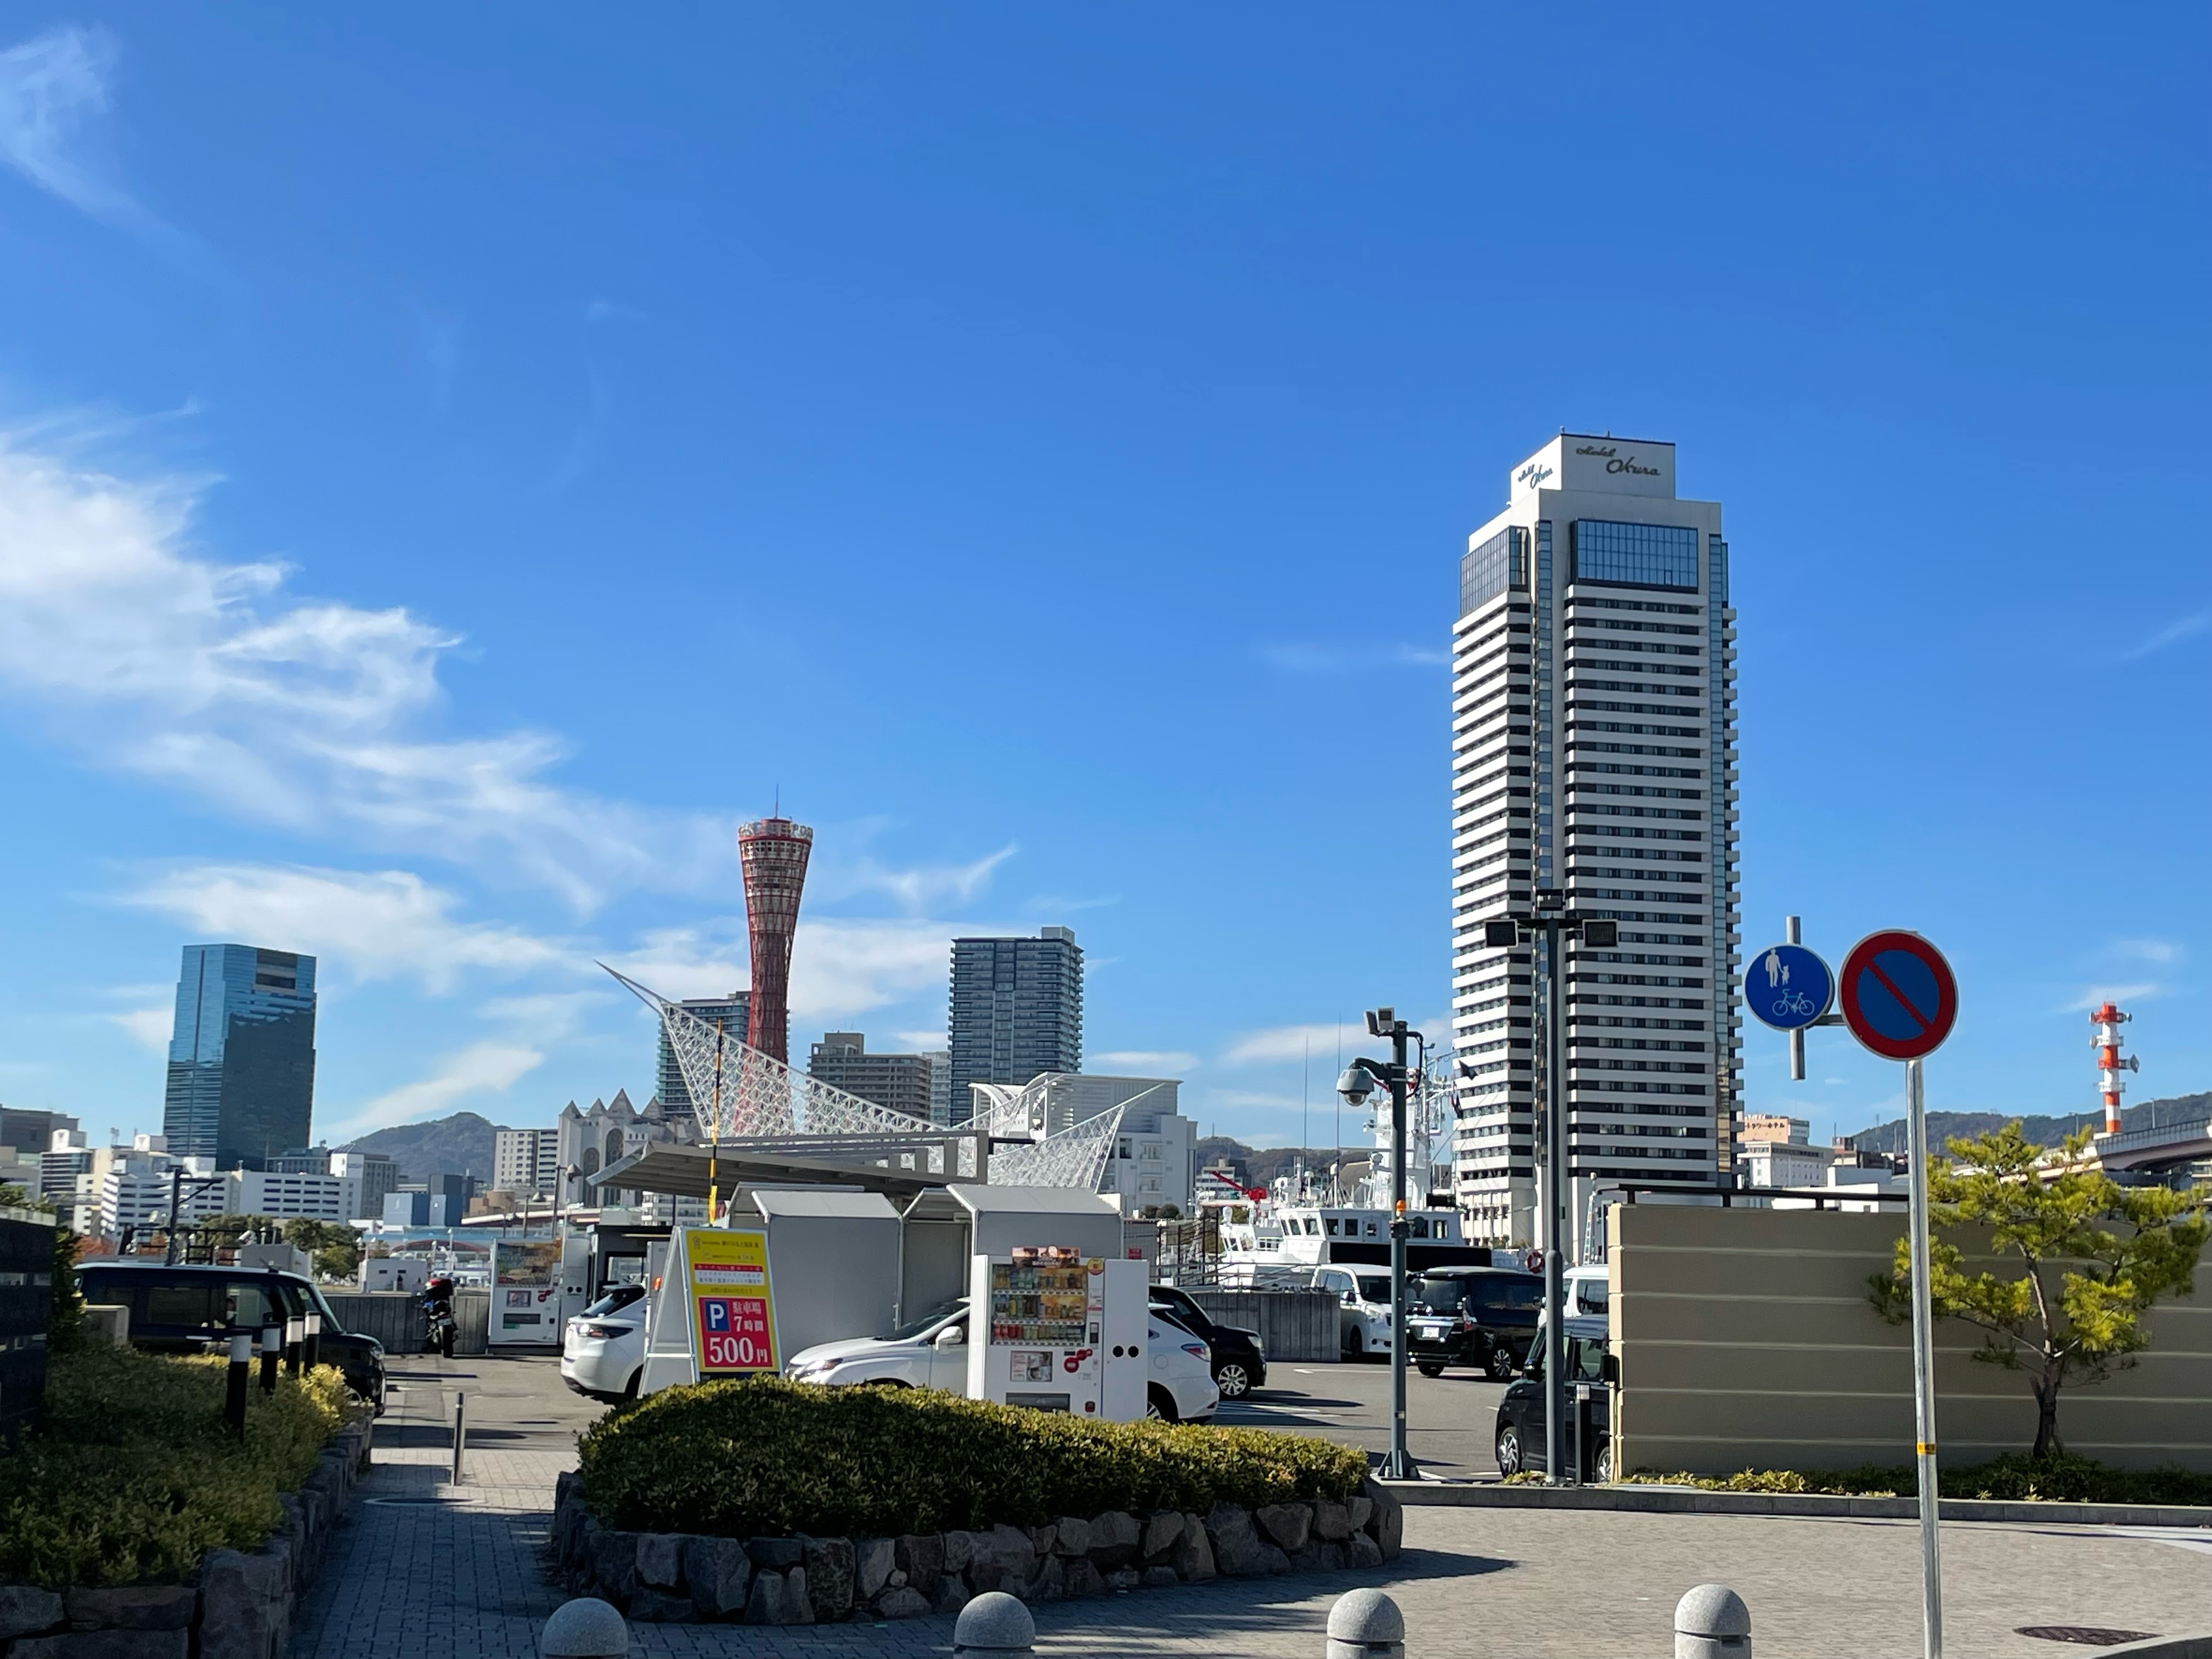 「atoa」から西方向を見た景色。神戸市のシンボルであるポートタワーを臨める最高のロケーションだ